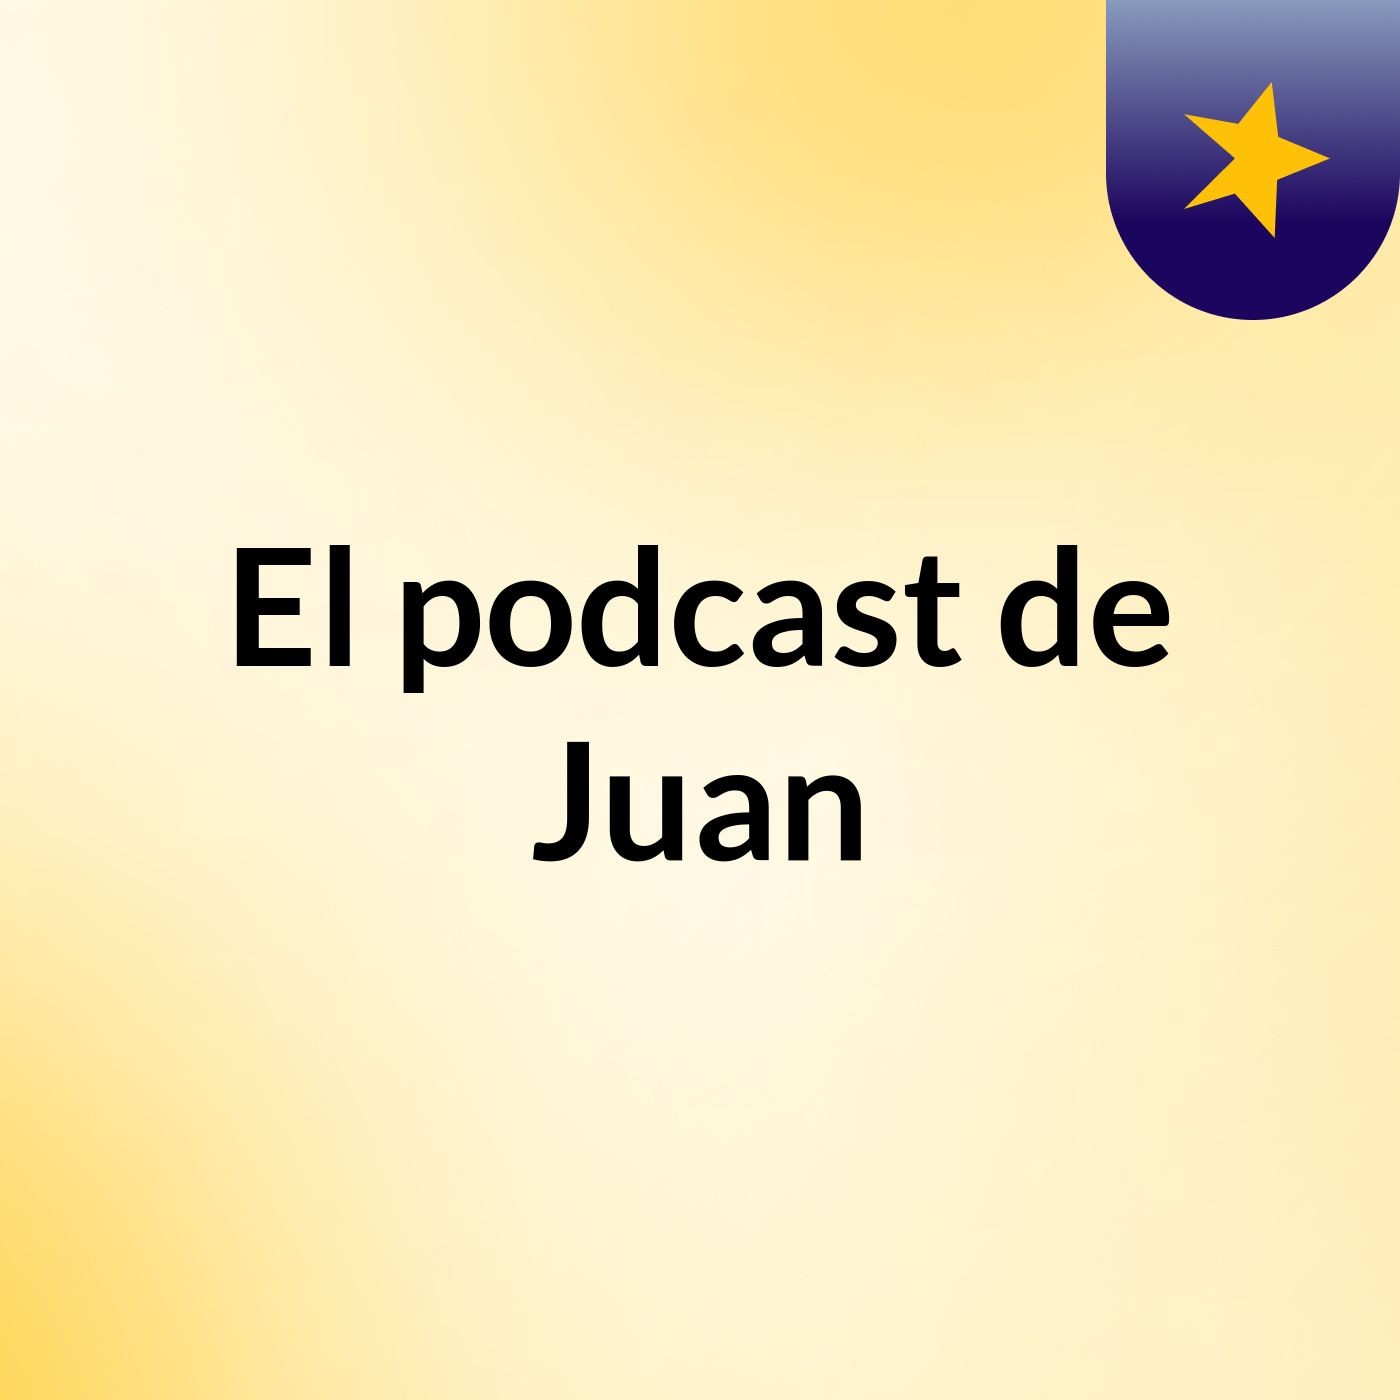 El podcast de Juan